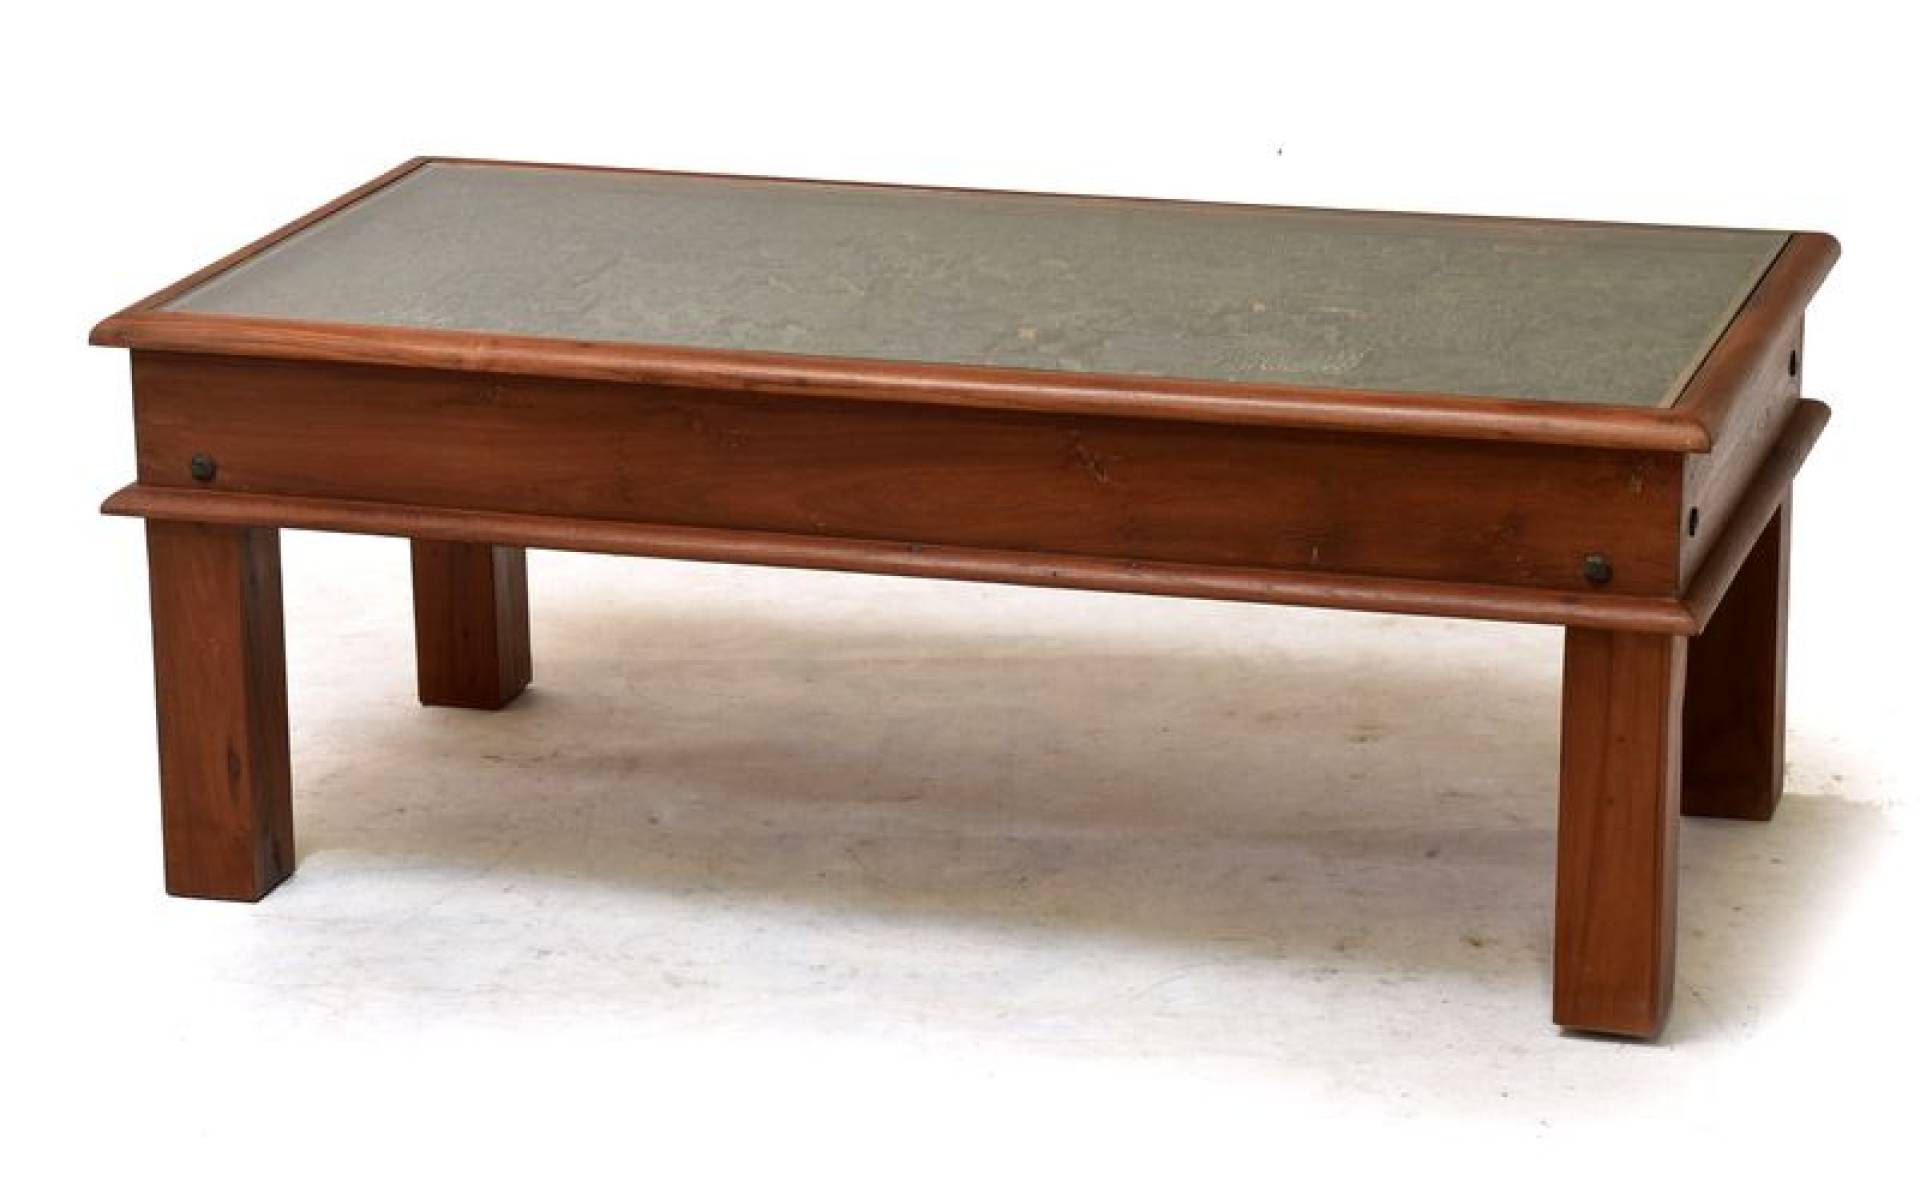 Konferenčný stolík z teakového dreva zdobený starými raznicami, 60x120x45cm